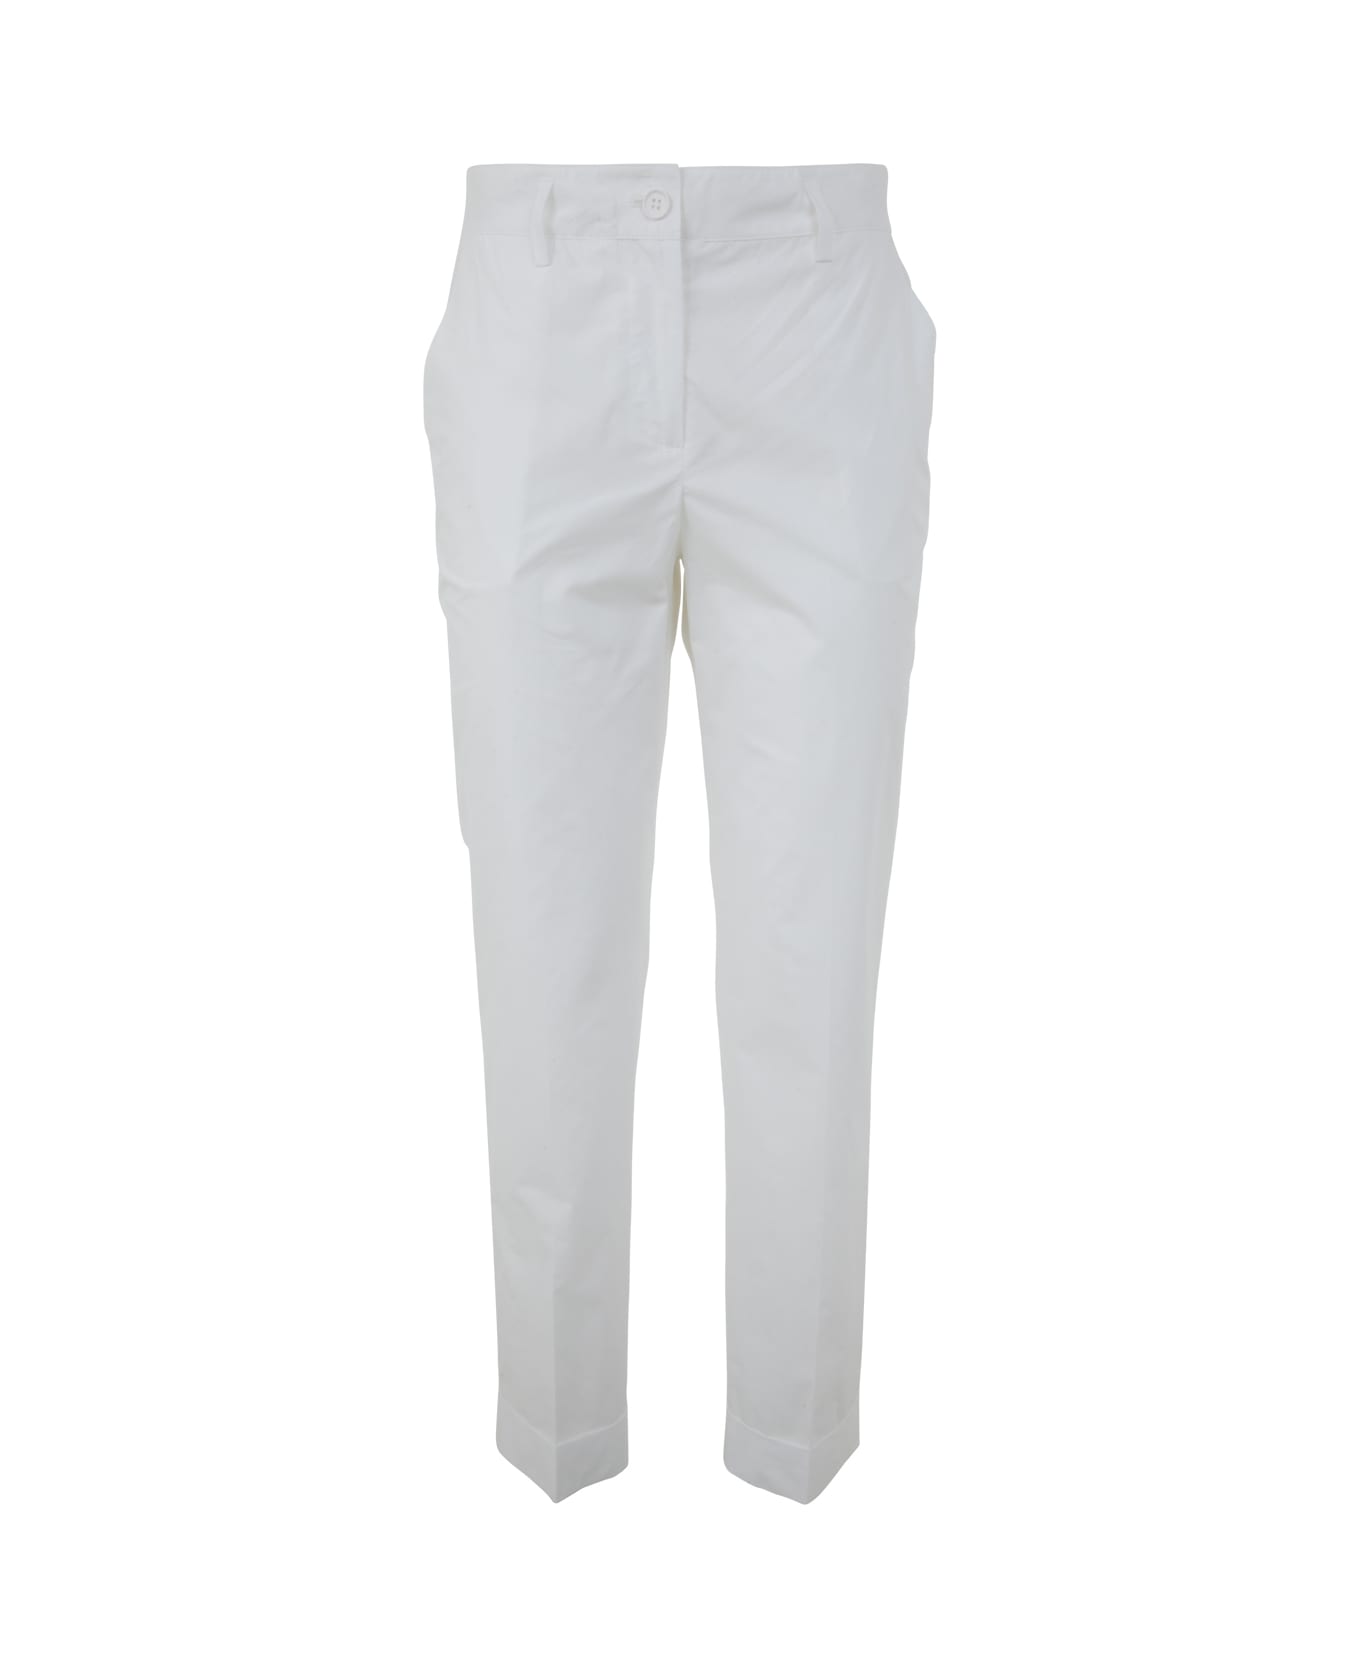 Parosh Plain Cotton Trousers - White ボトムス